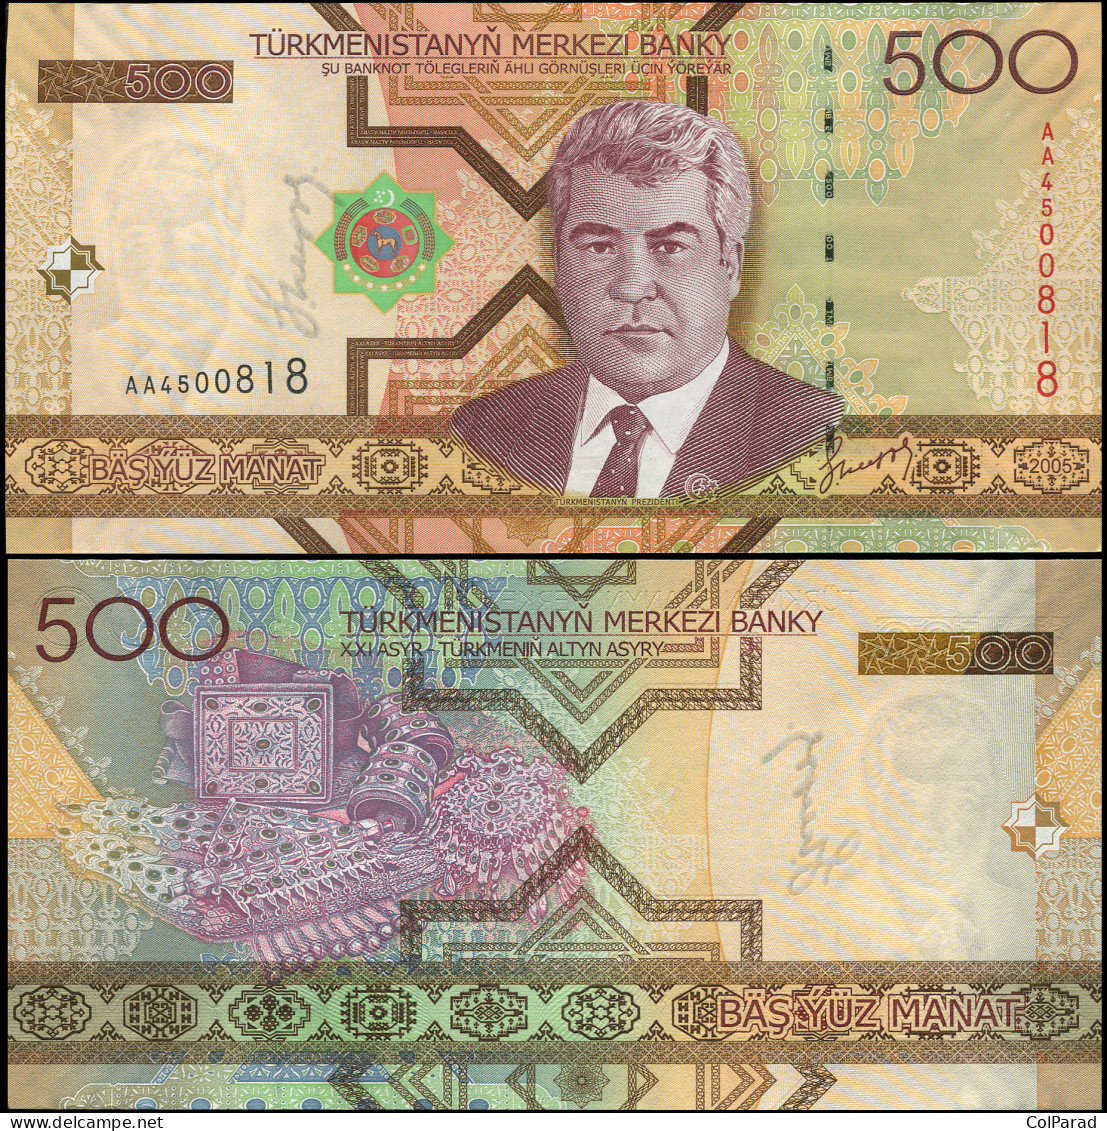 TURKMENISTAN 500 MANAT - 2005 - Paper Unc - P.19a Banknote - Turkmenistan